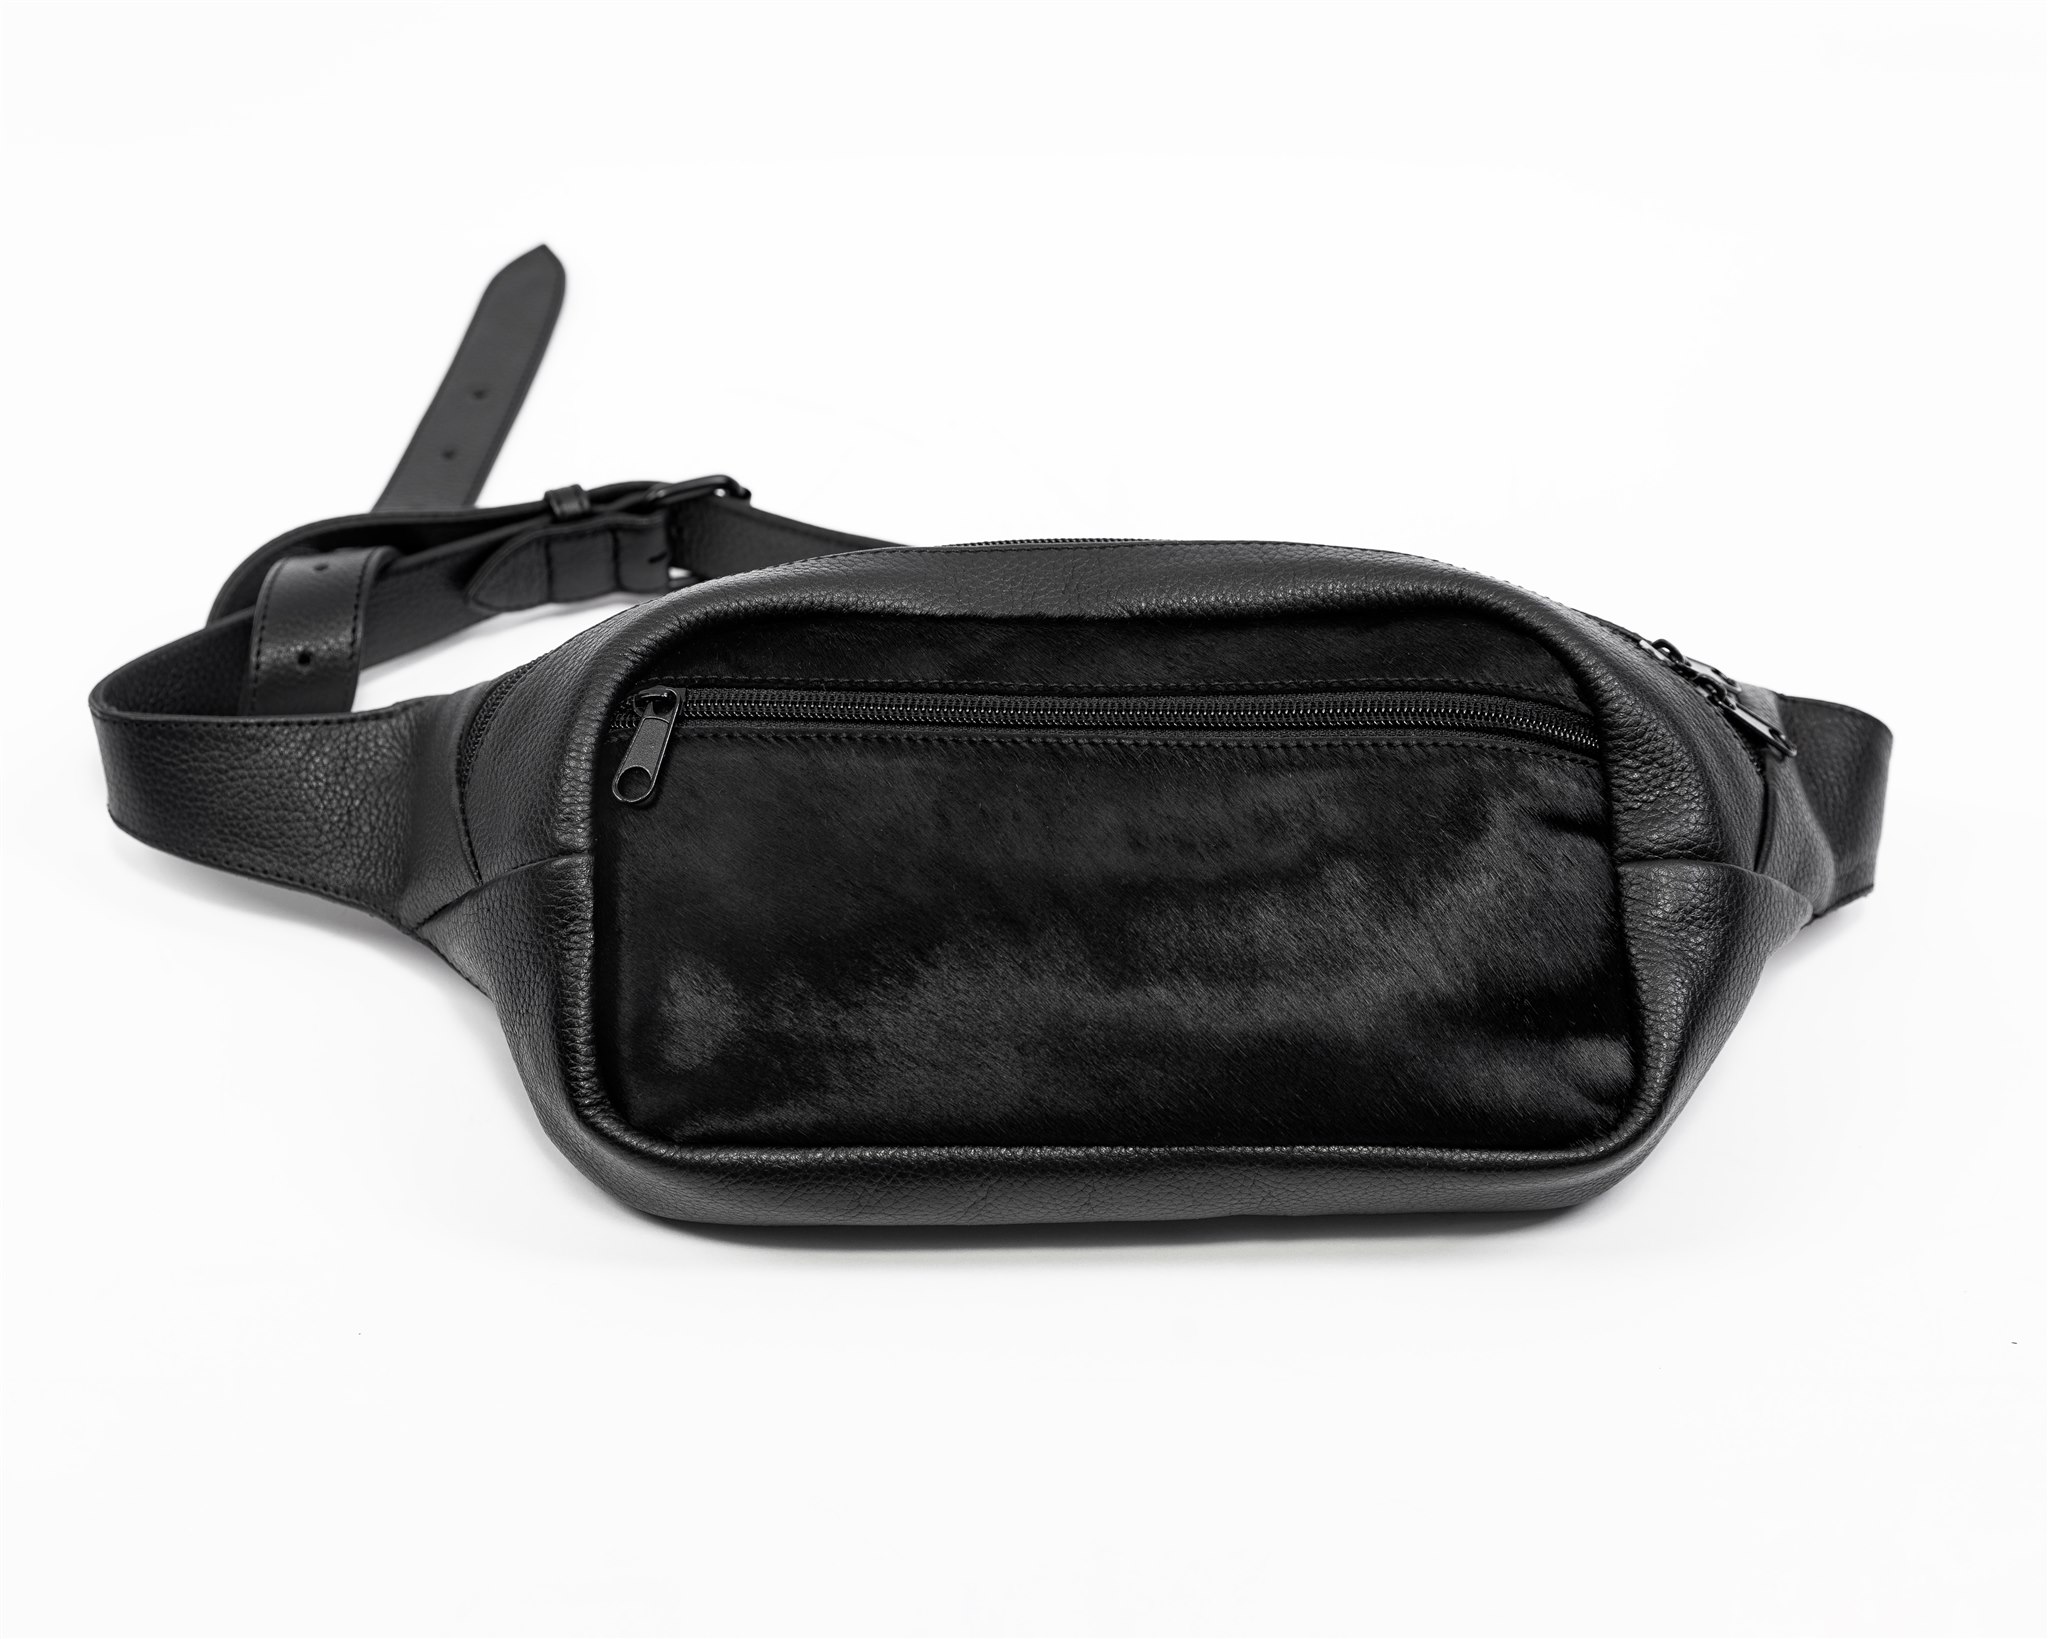 Leather belt bag "ENNO" by June9Concept